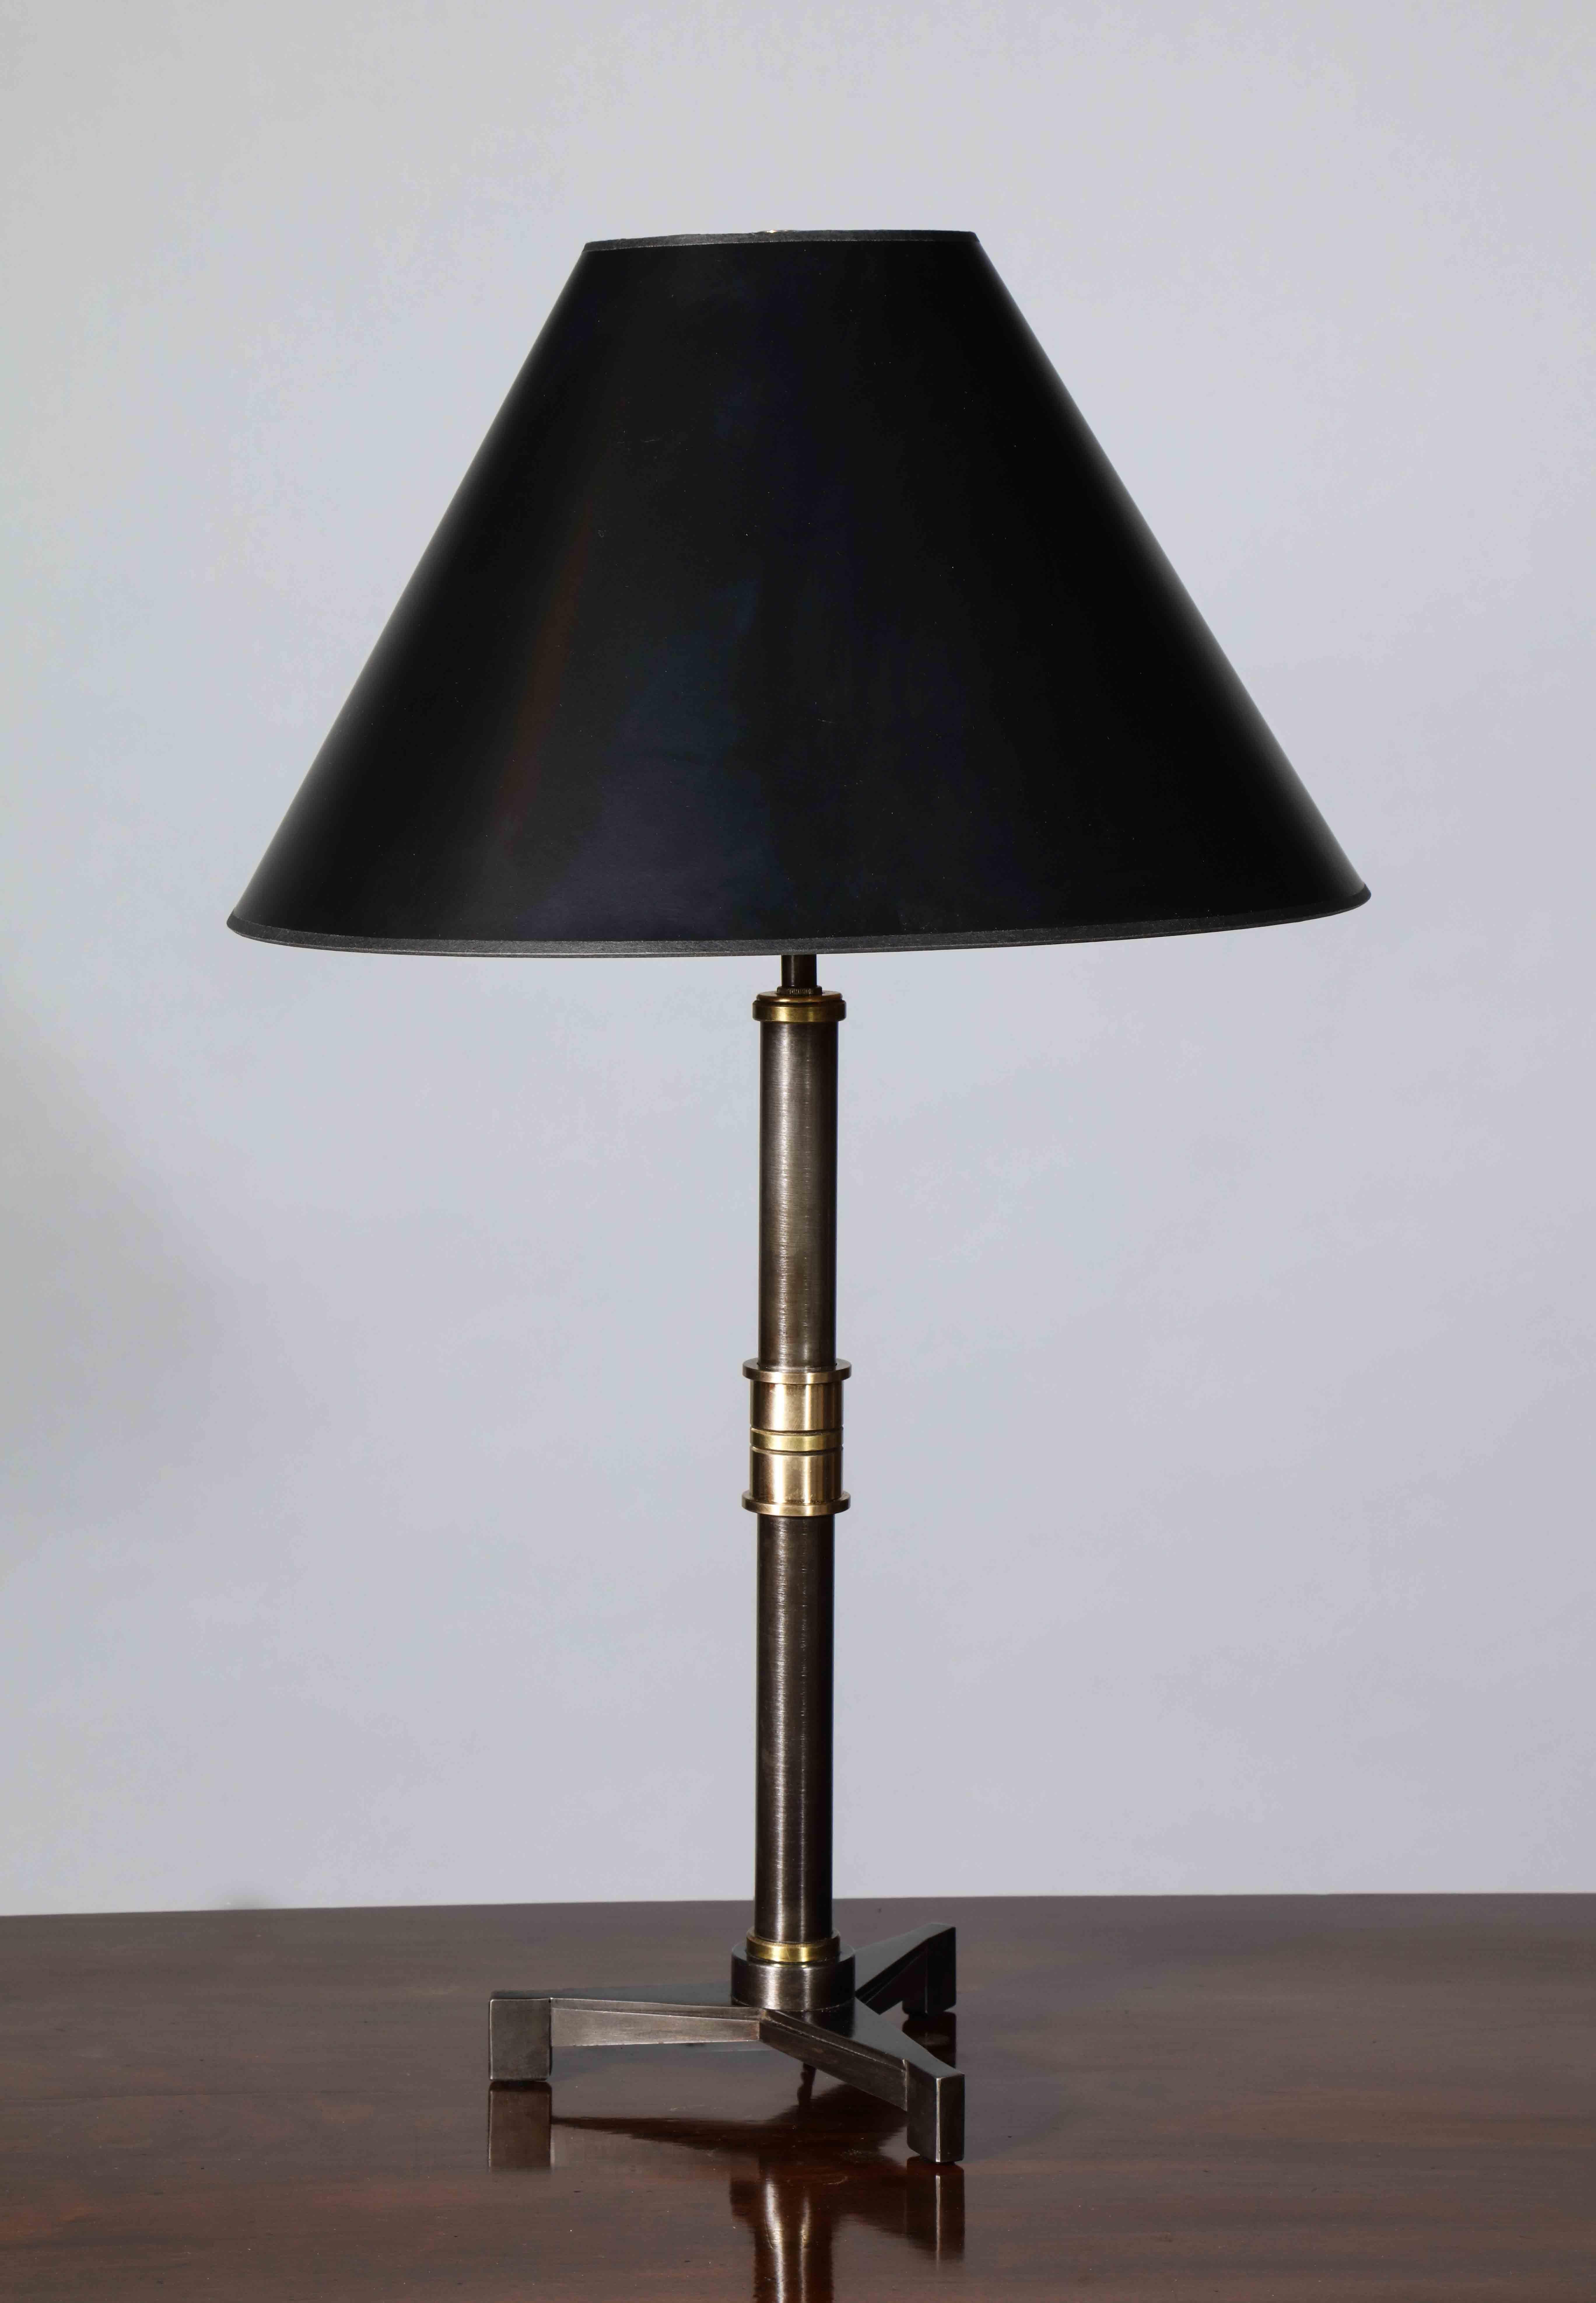 Une lampe de table avec une base à trois pieds présentant des cannelures effilées qui s'inscrivent dans le mouvement art déco. La poignée est réalisée dans une série de bandes de laiton et de bronze subtilement contrastés. Ce design s'inspire